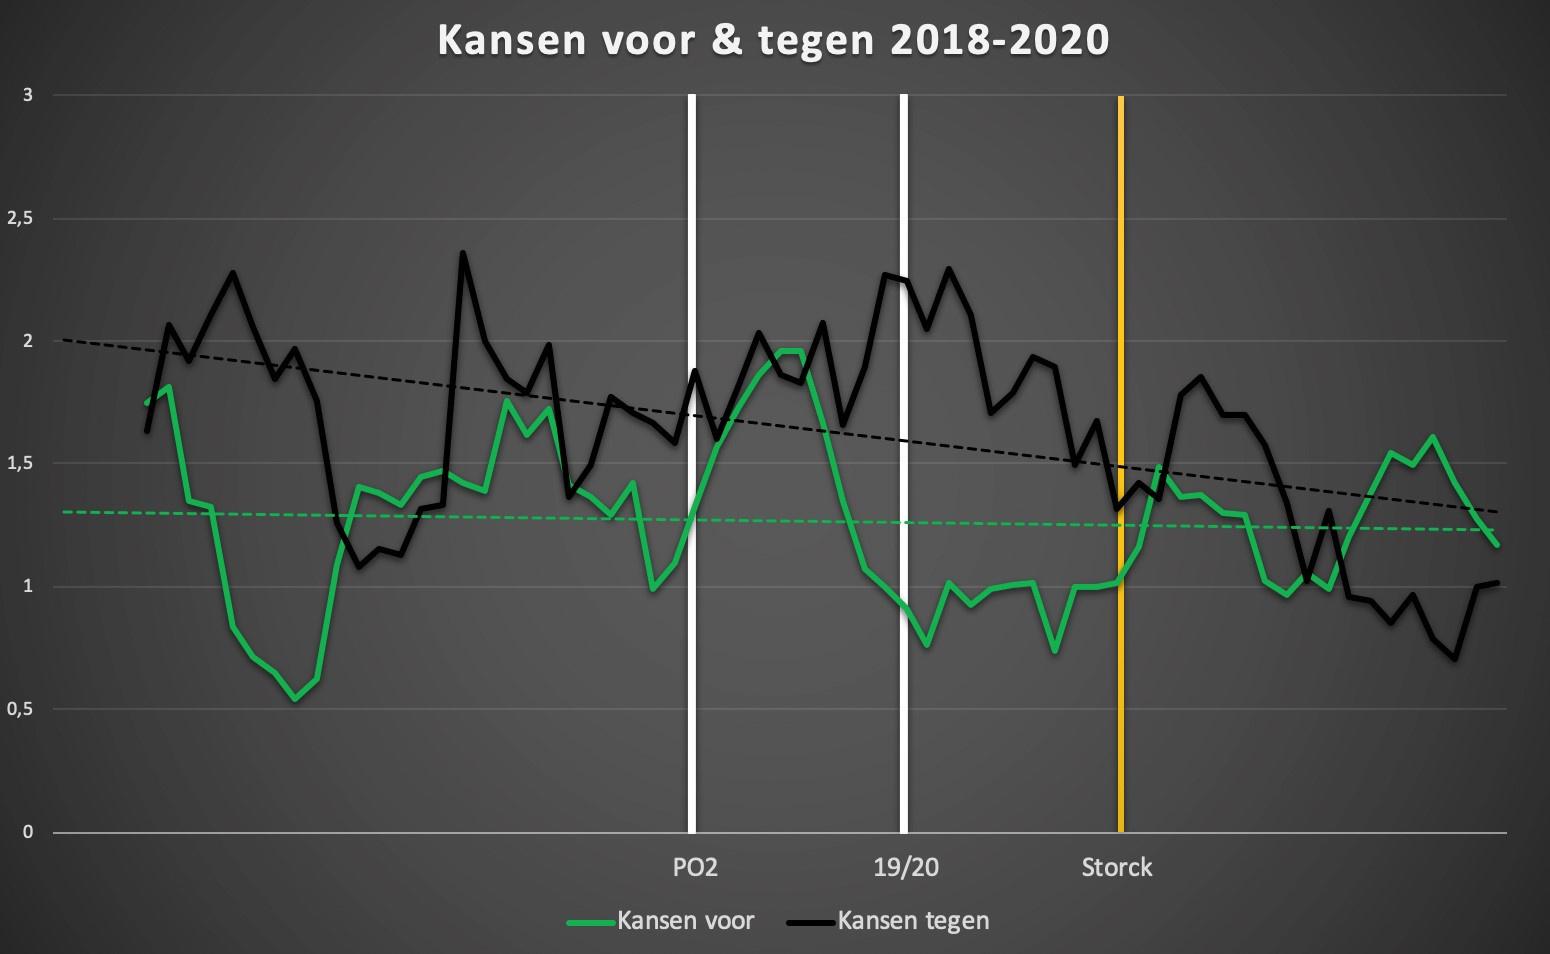 De evolutie van de kansen voor en tegen van Cercle Brugge sinds de promotie. Meer uitleg over deze grafiek is te vinden onderaan het artikel. (meer info over de grafiek vind je onderaan dit artikel)